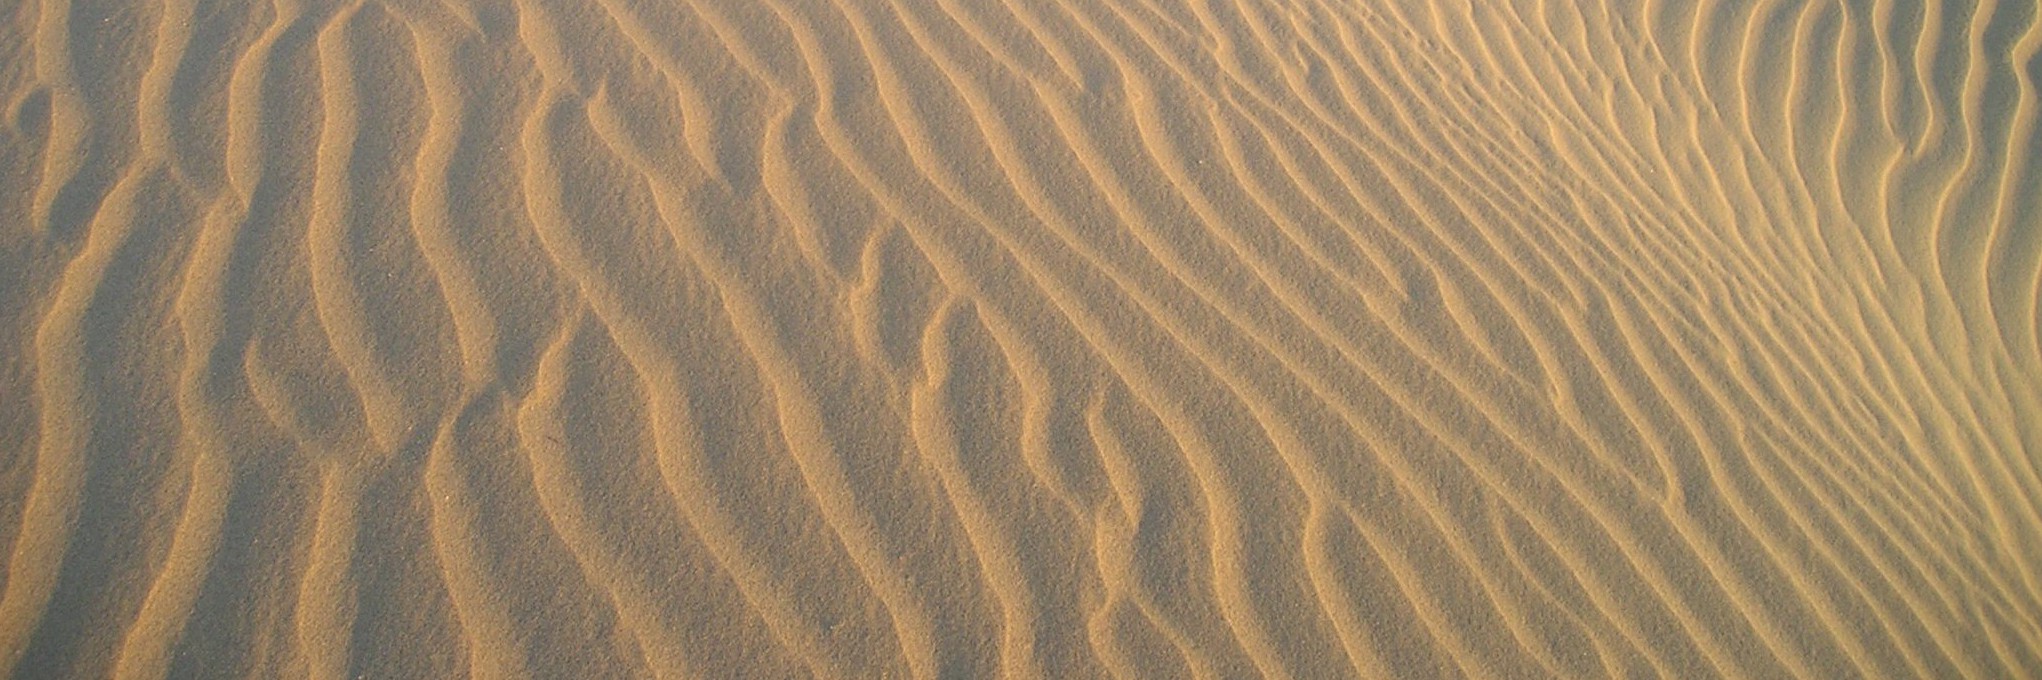 india_desert_sand